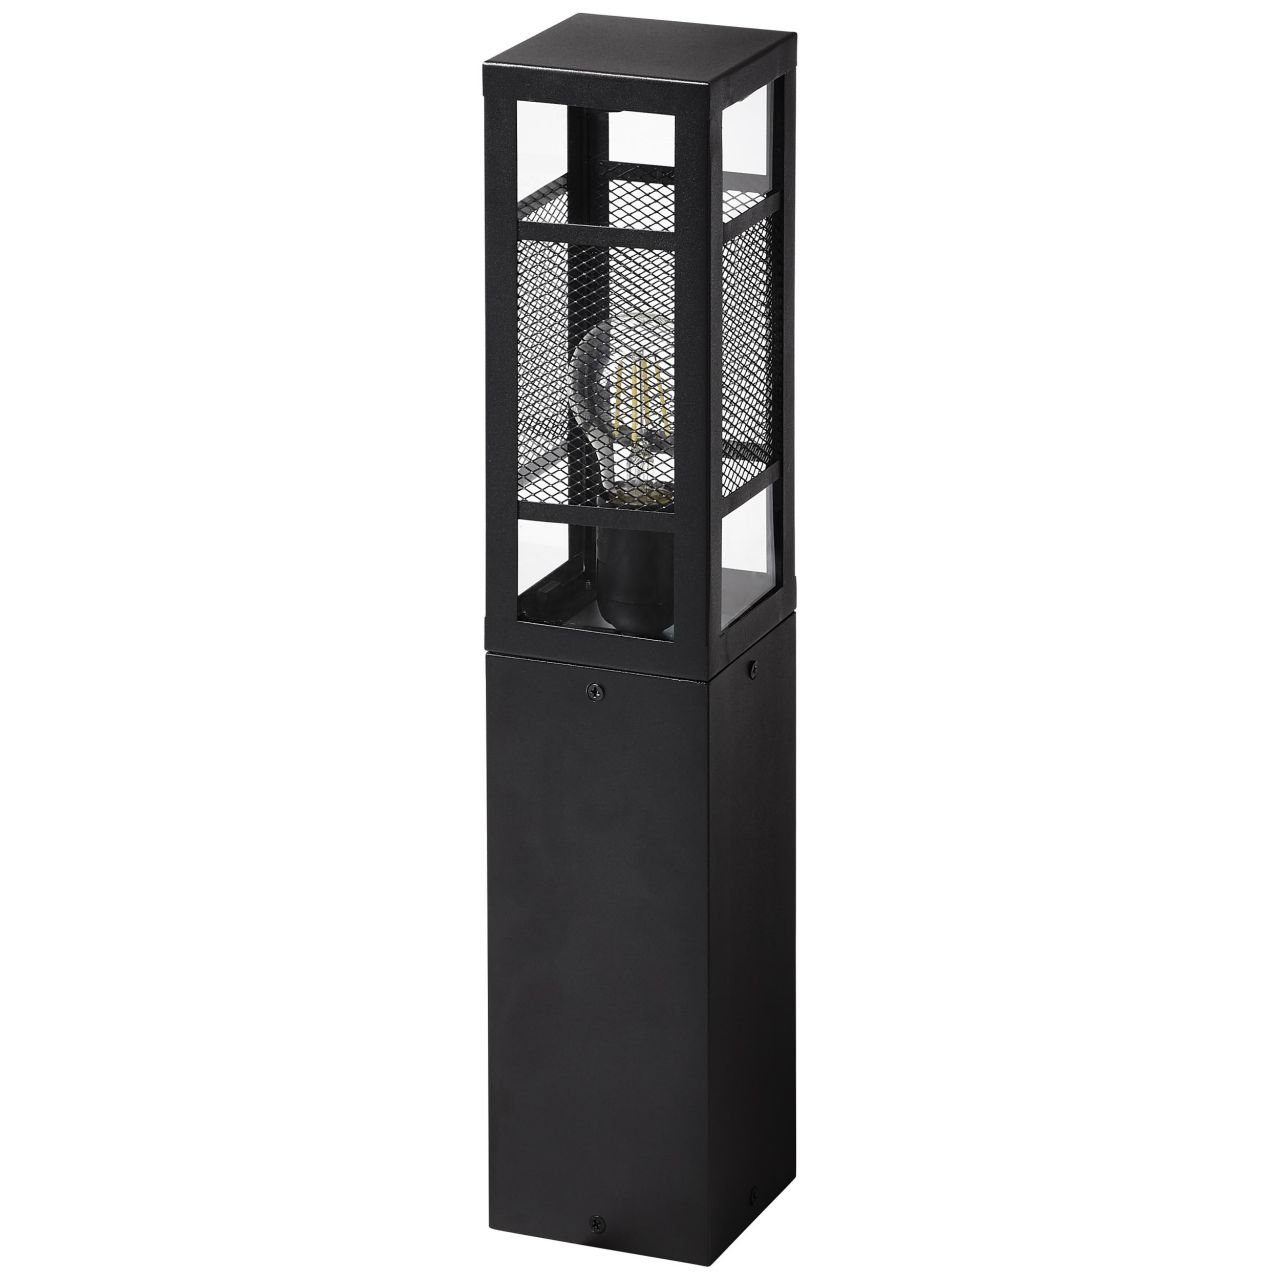 Brilliant Außen-Stehlampe Außensockelleuchte Getta Lampe, schwarz, 1x A6 Getta, Metall/Kunststoff, 50cm